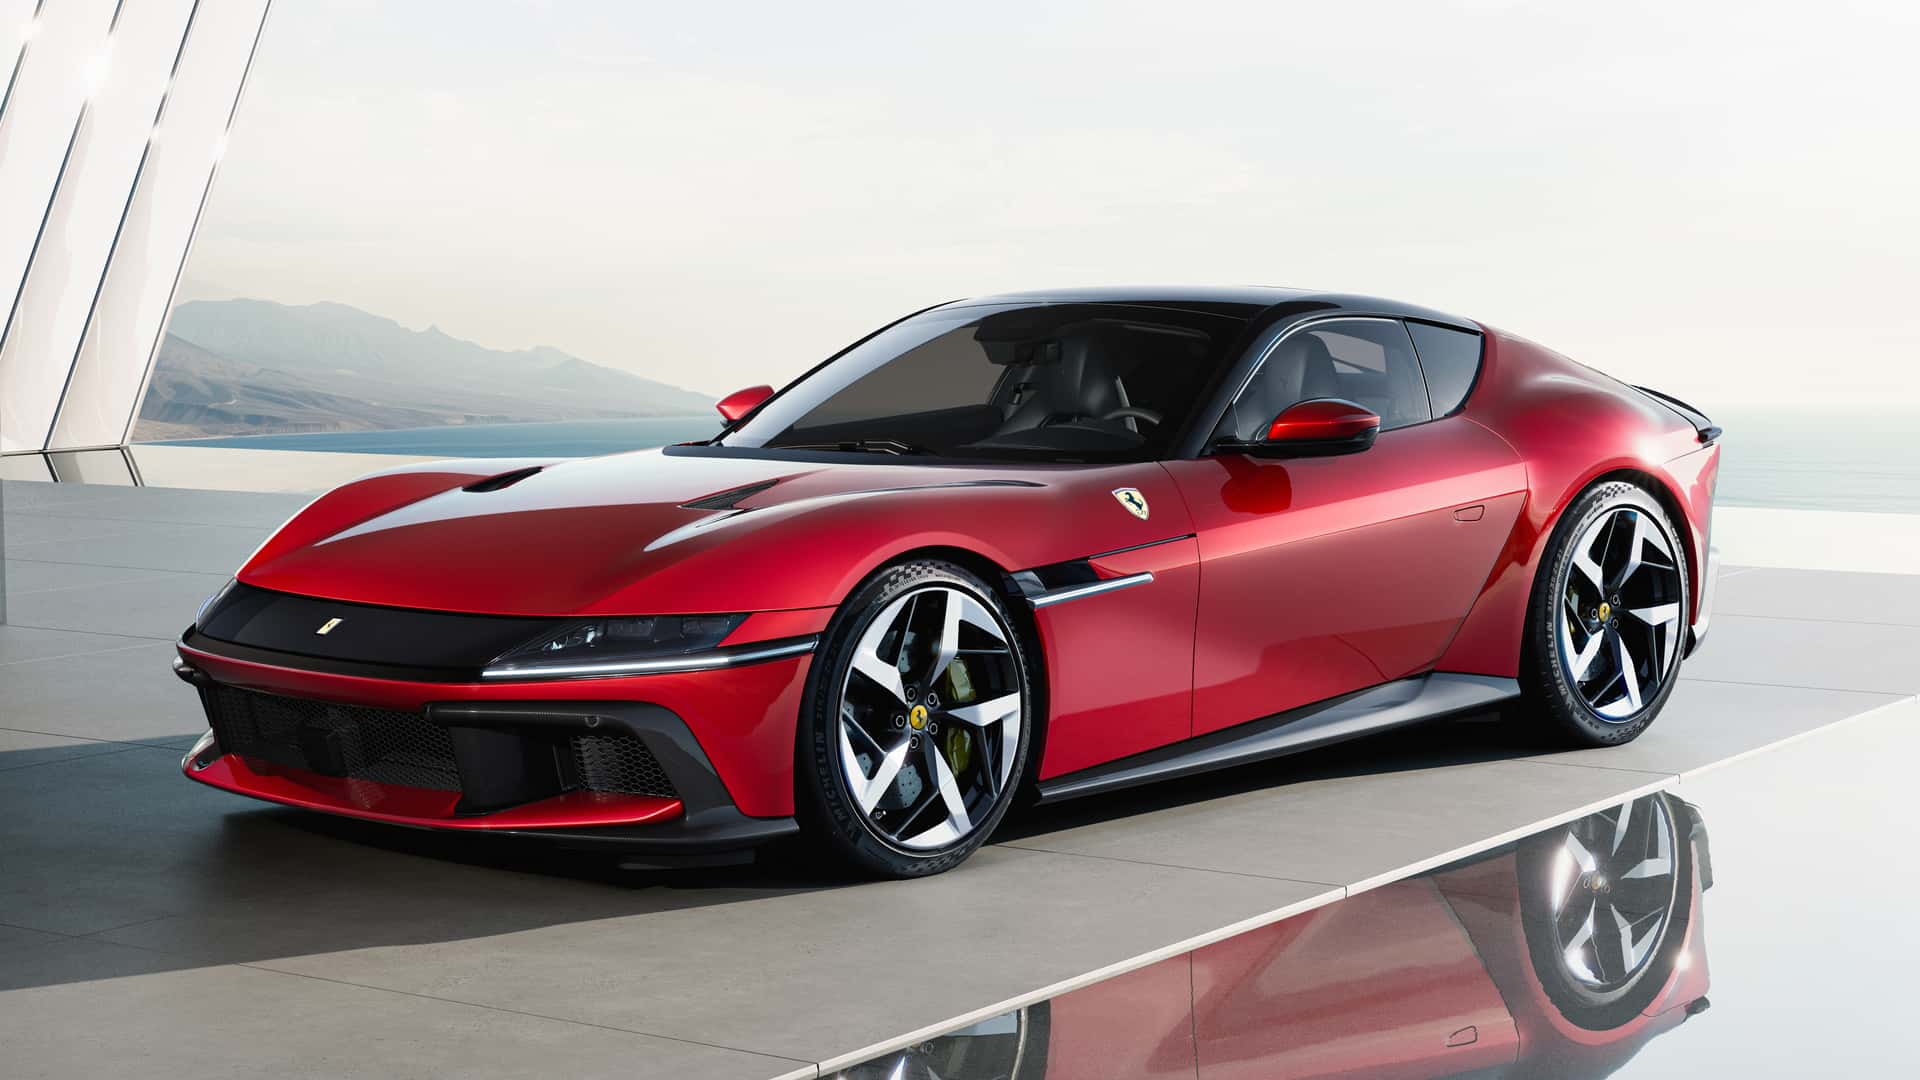 Ferrari 12Cilindri ra mắt, hội tụ đủ yếu tố mạnh mẽ, hiện đại và đắt